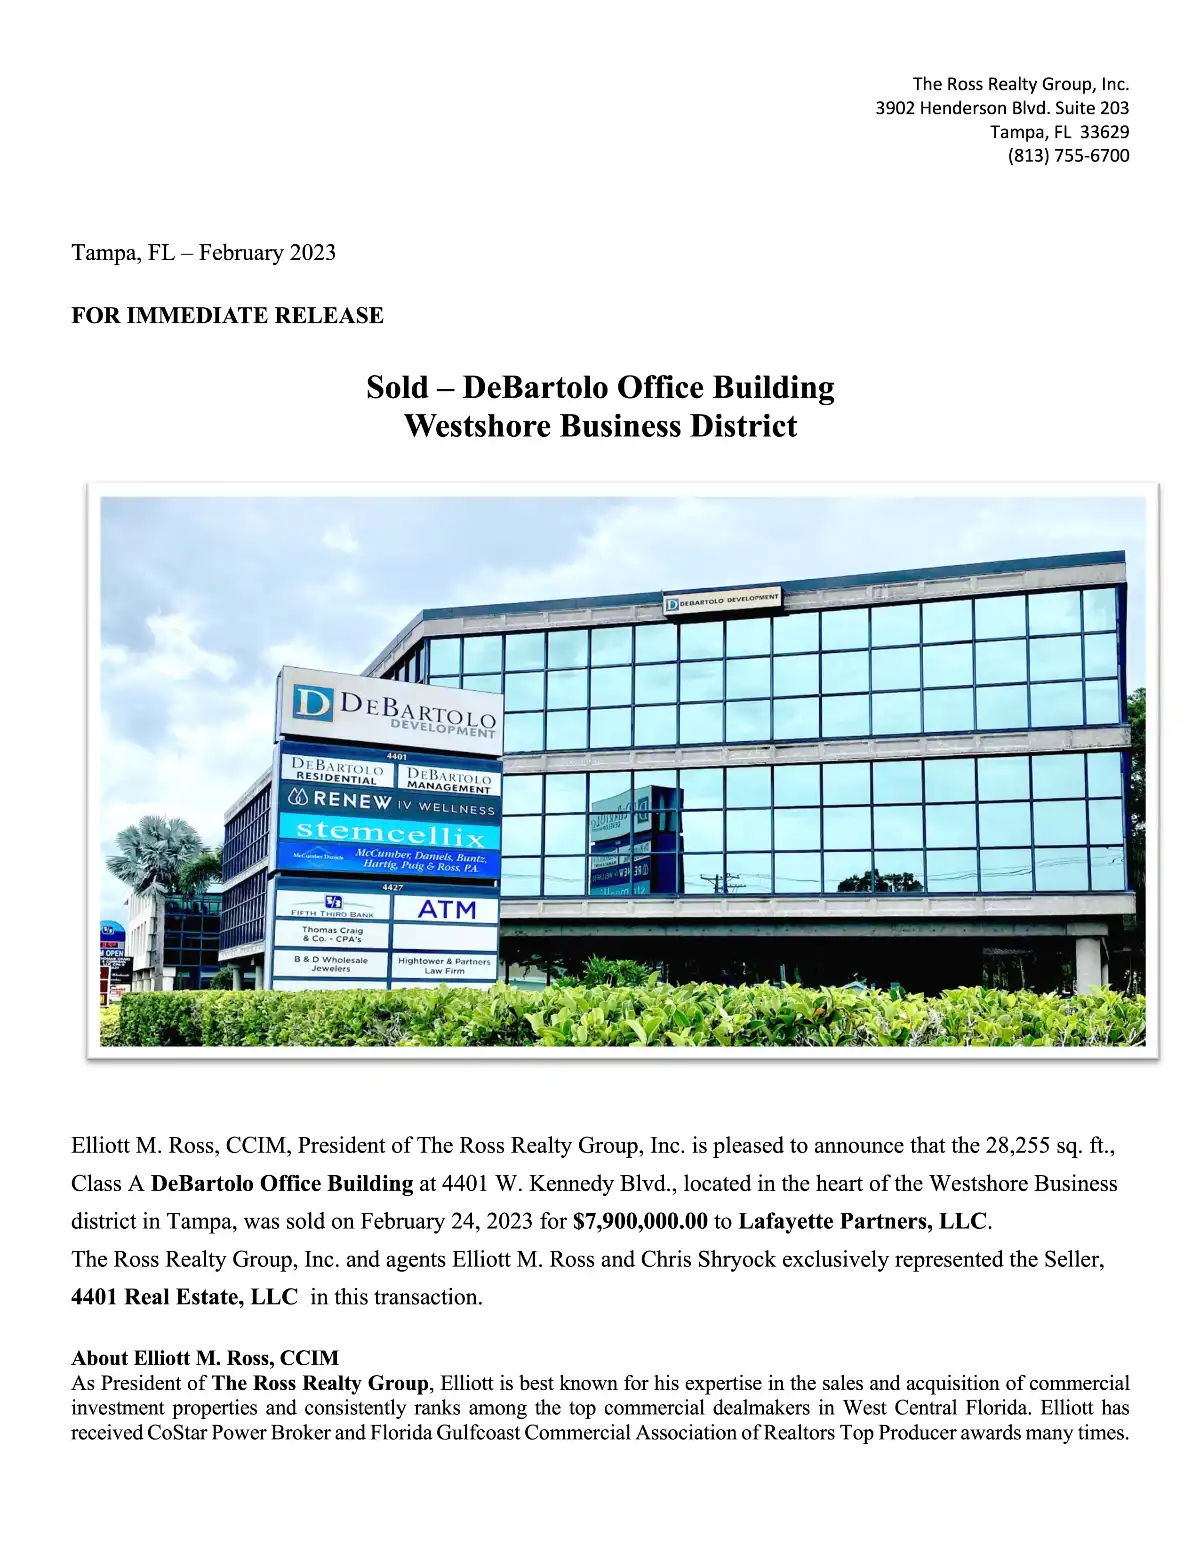 Sold - DeBartolo Office Building
Westshore Business District